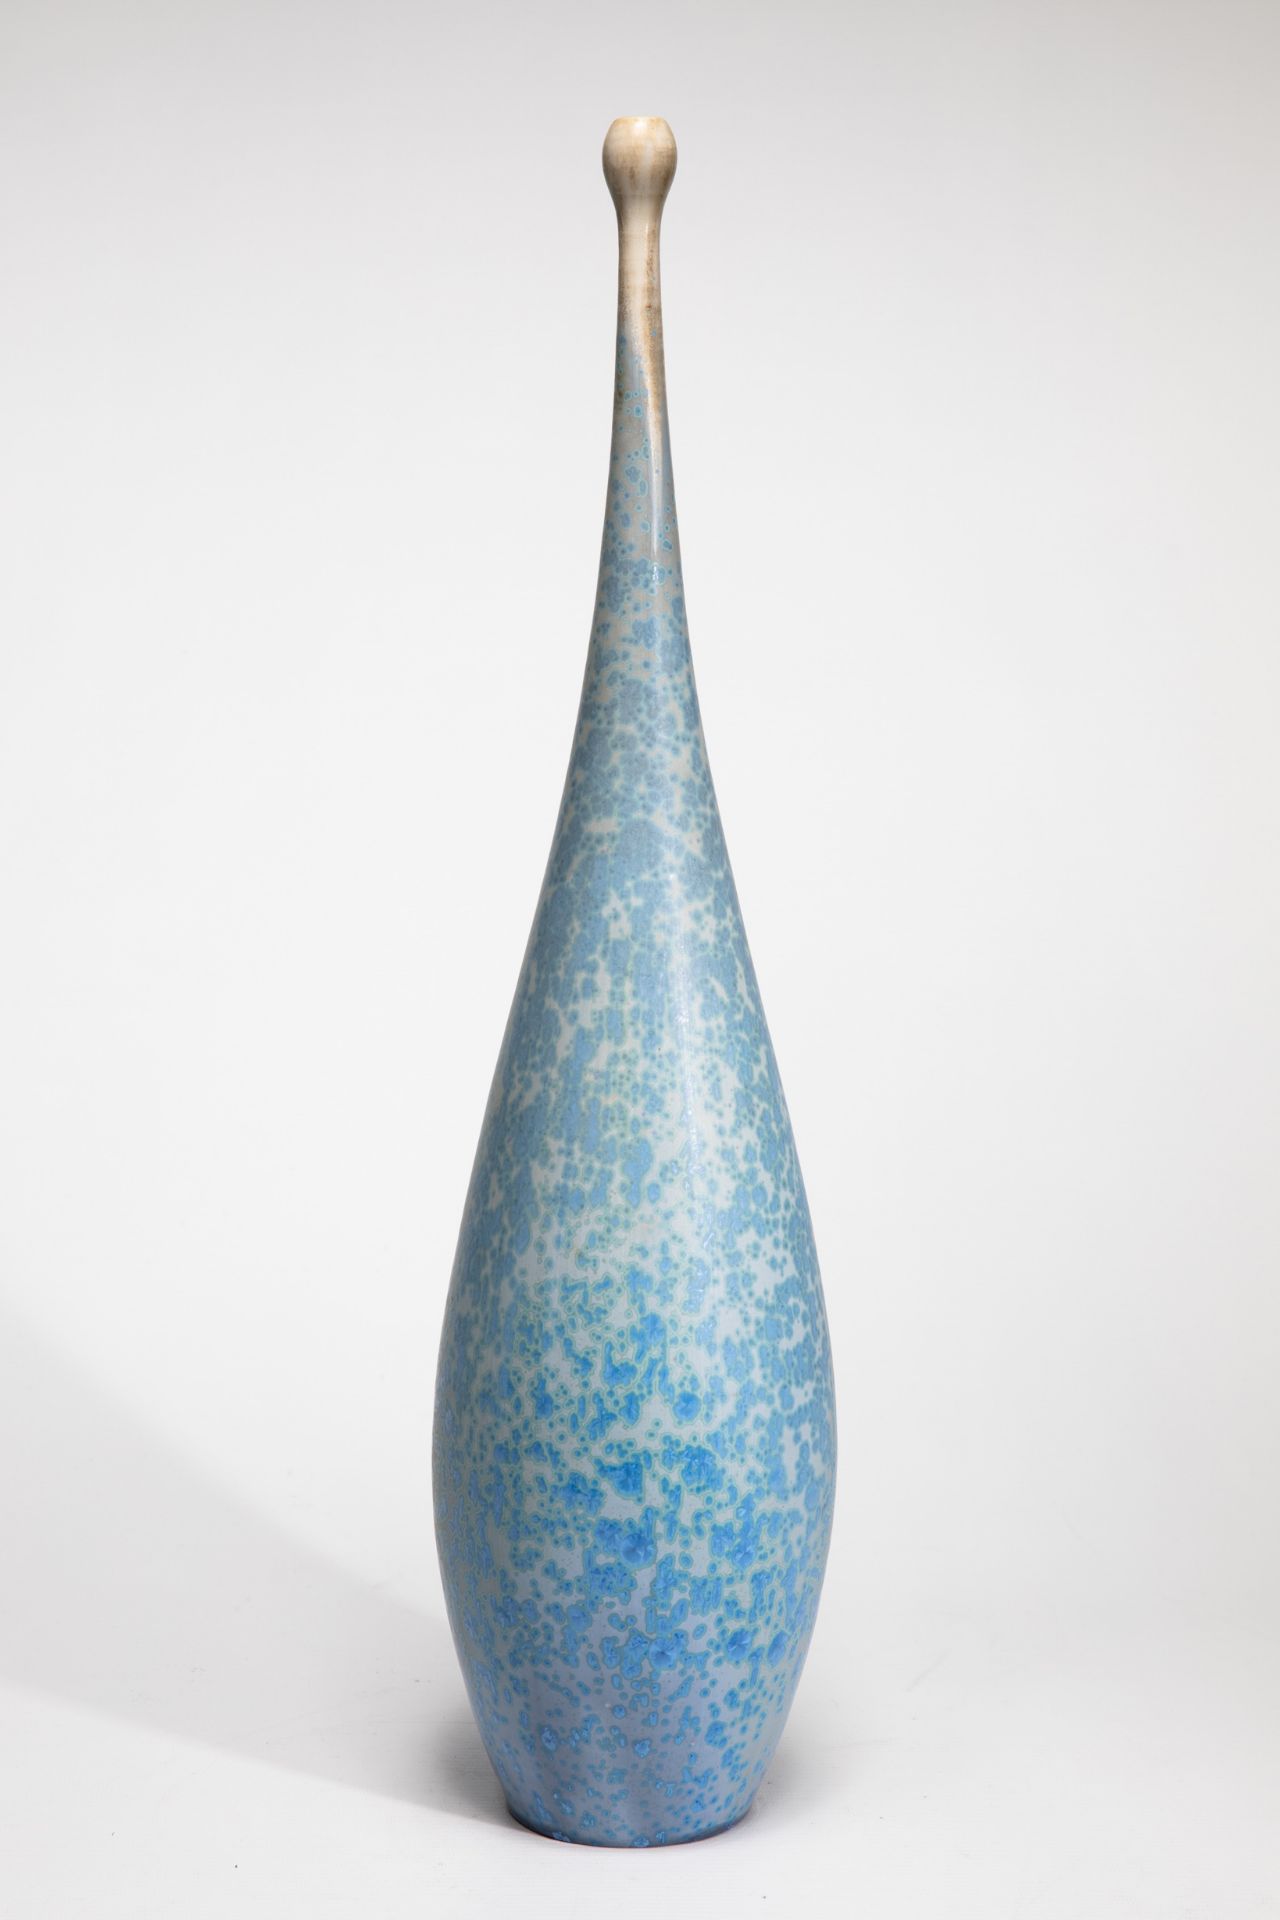 Wendelin Stahl, Large Vase